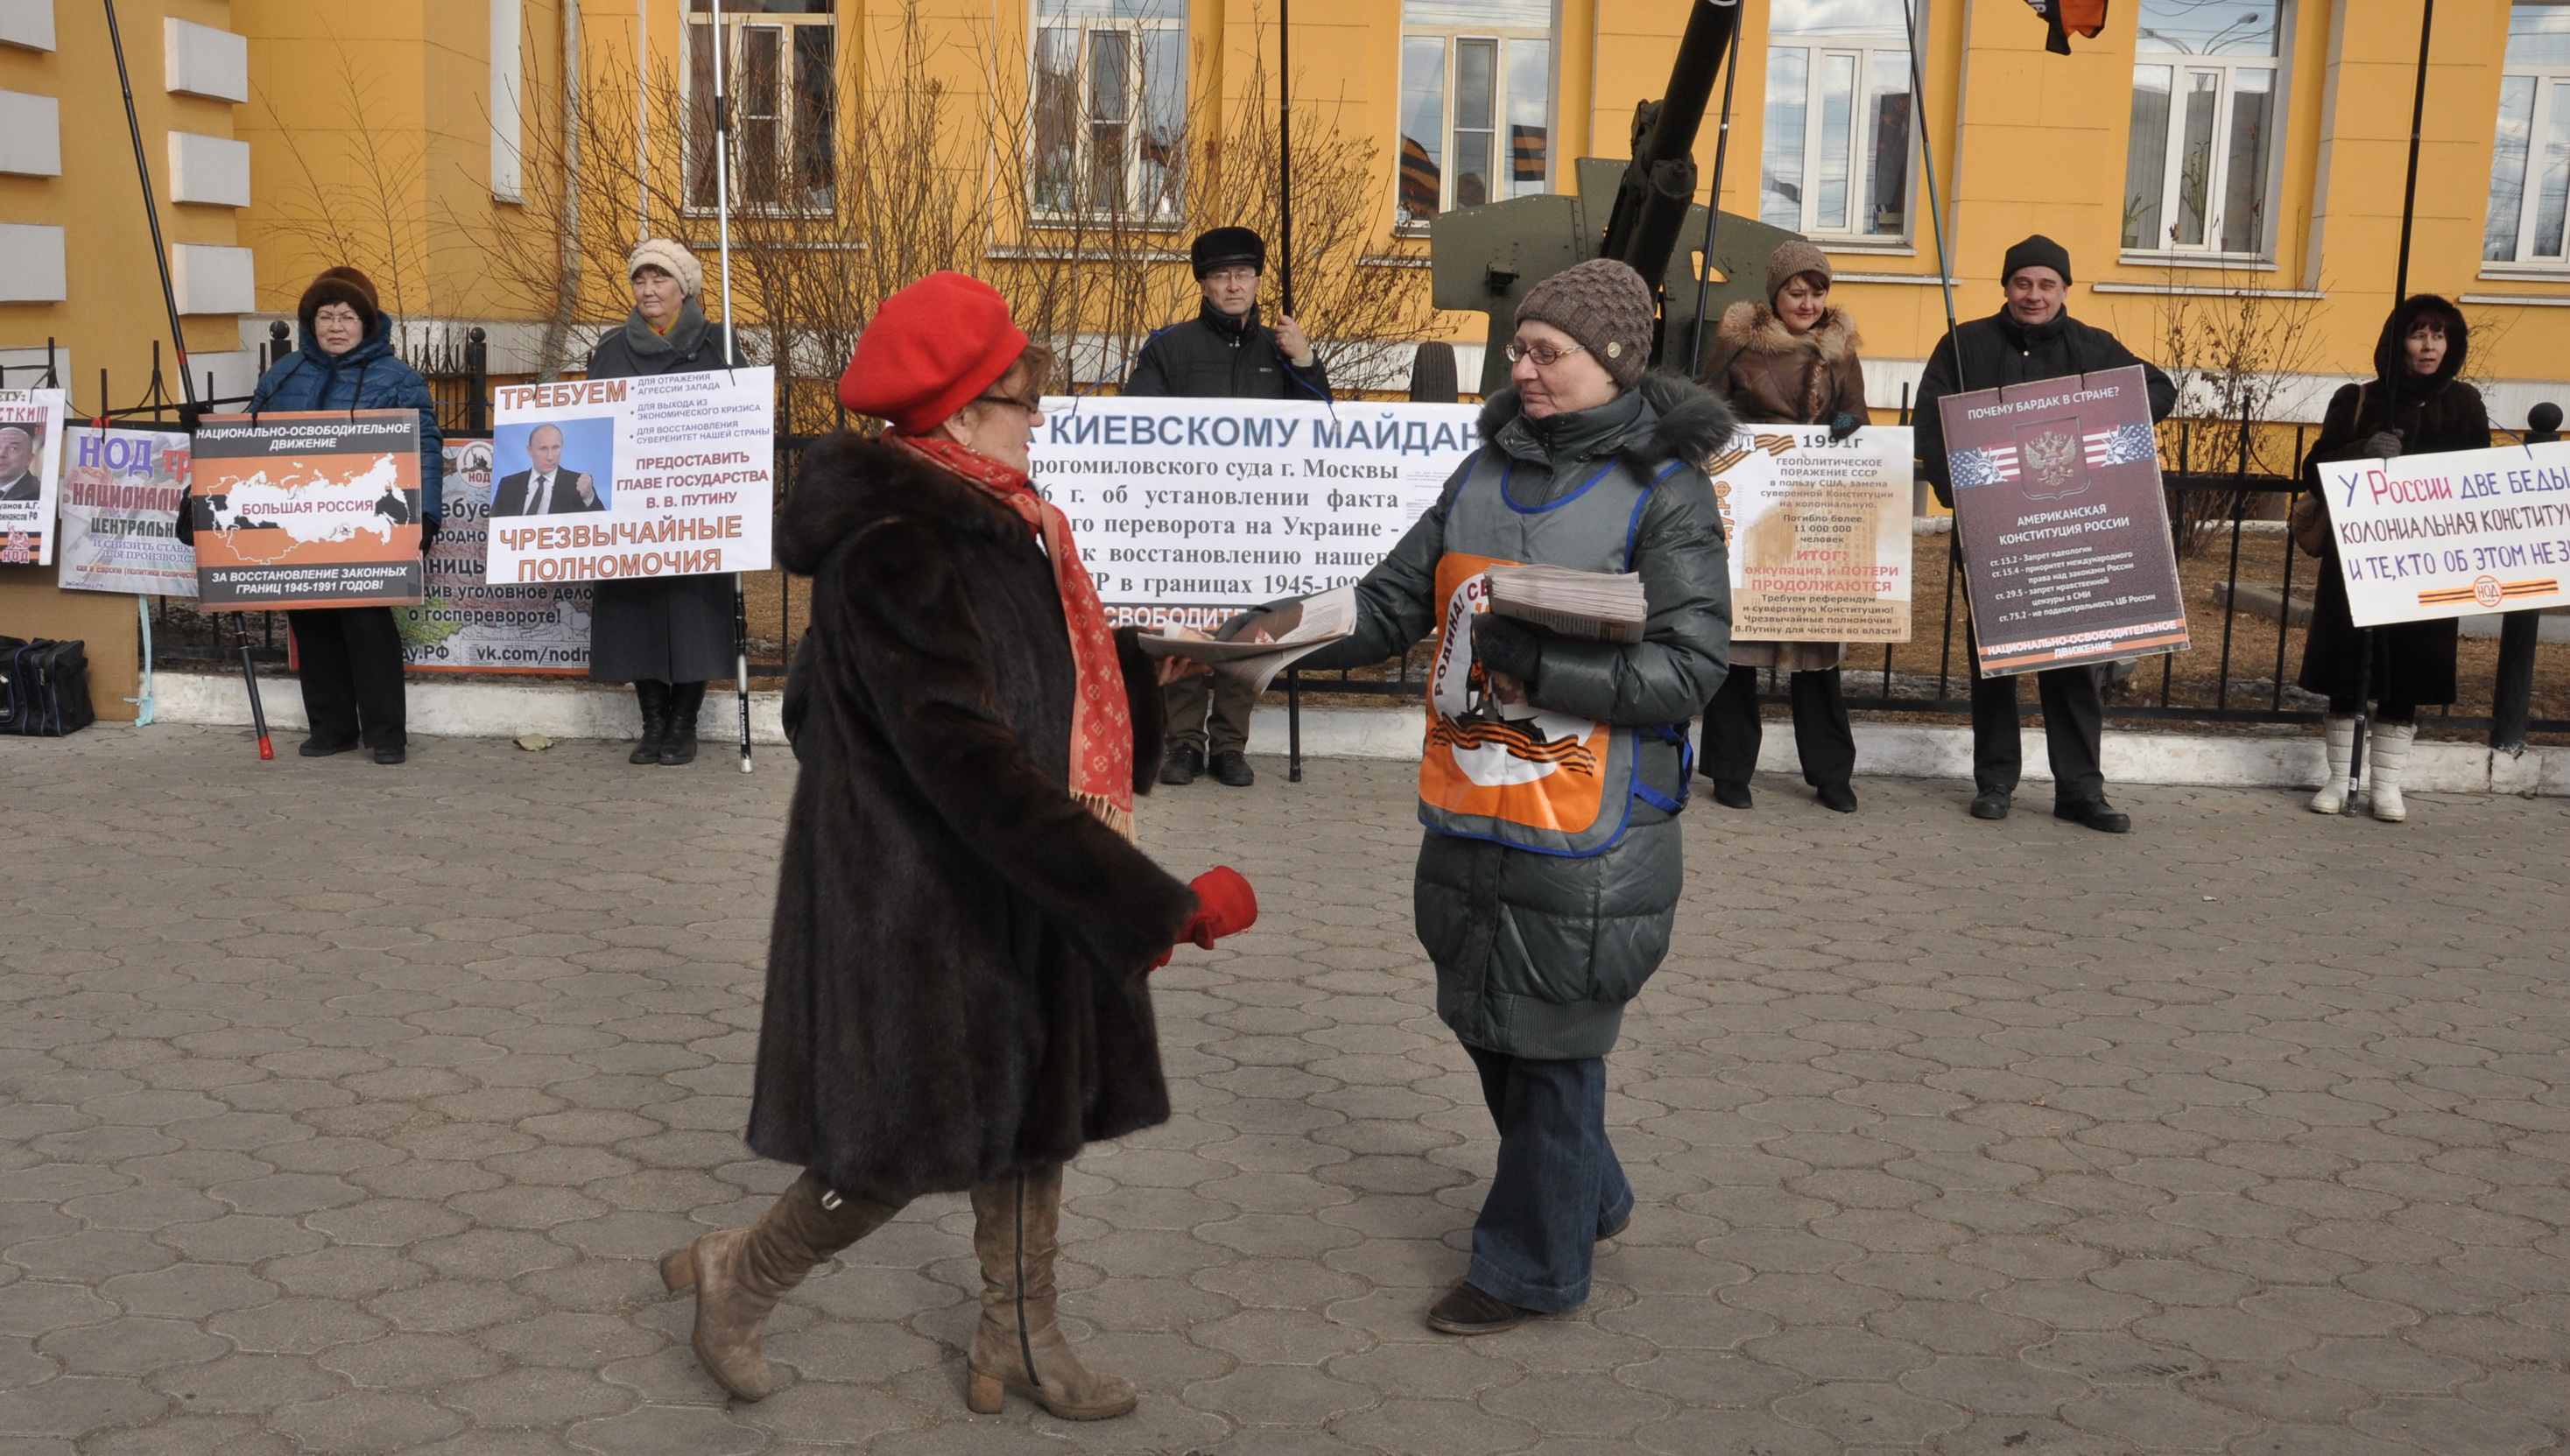 НОД в Чите провел пикет в поддержку Путина и за суверенитет РФ